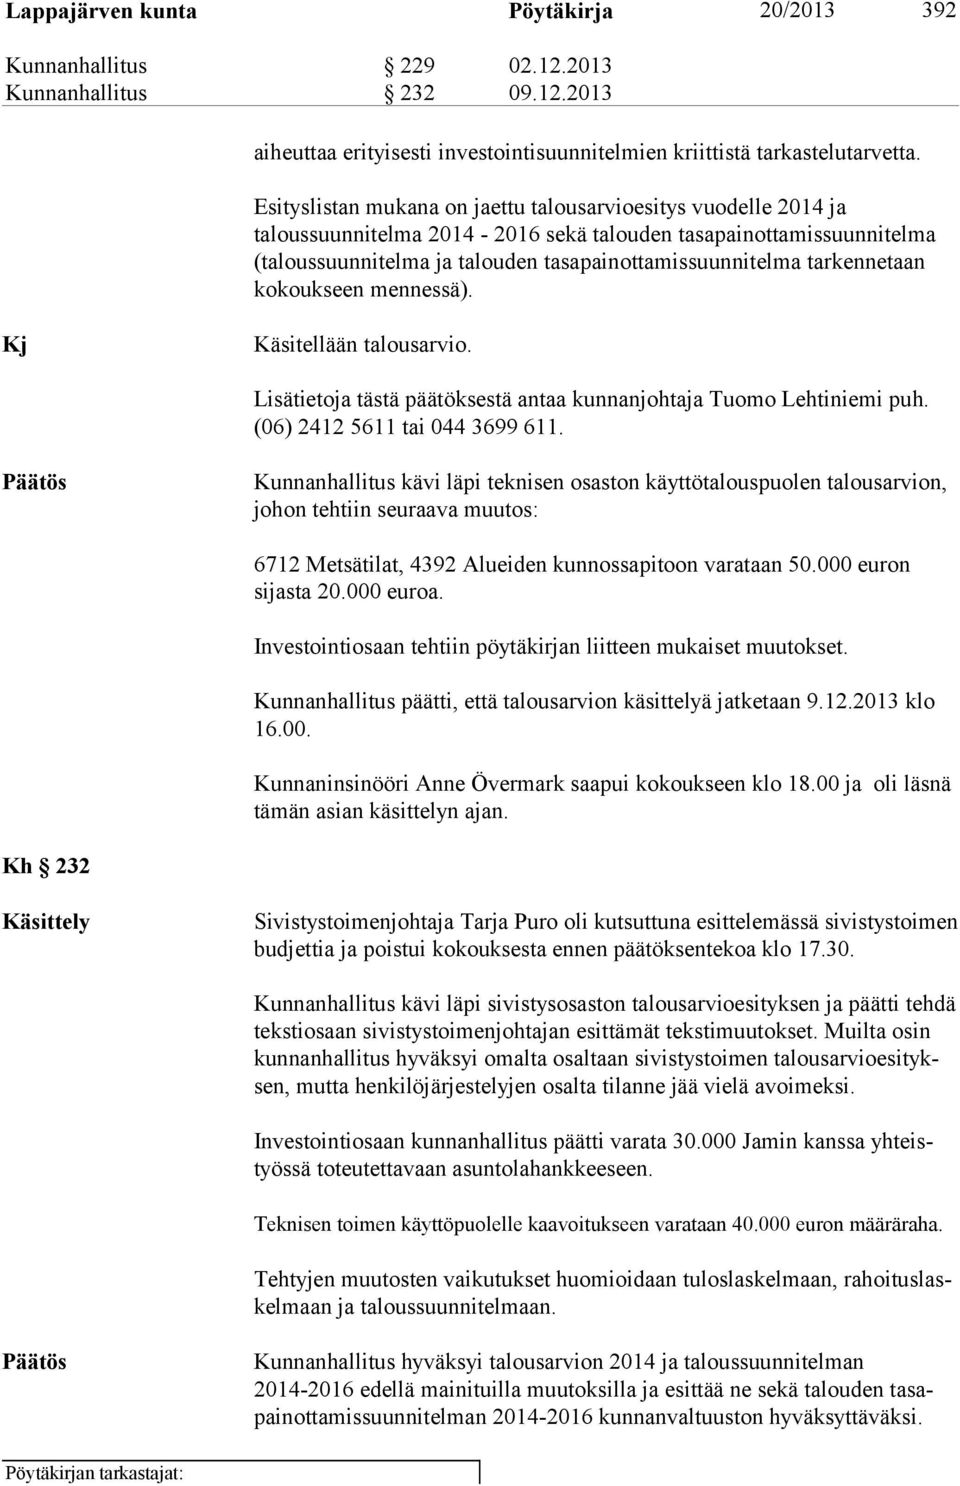 tarkennetaan kokoukseen mennessä). Kj Käsitellään talousarvio. Lisätietoja tästä päätöksestä antaa kunnanjohtaja Tuomo Lehtiniemi puh. (06) 2412 5611 tai 044 3699 611.